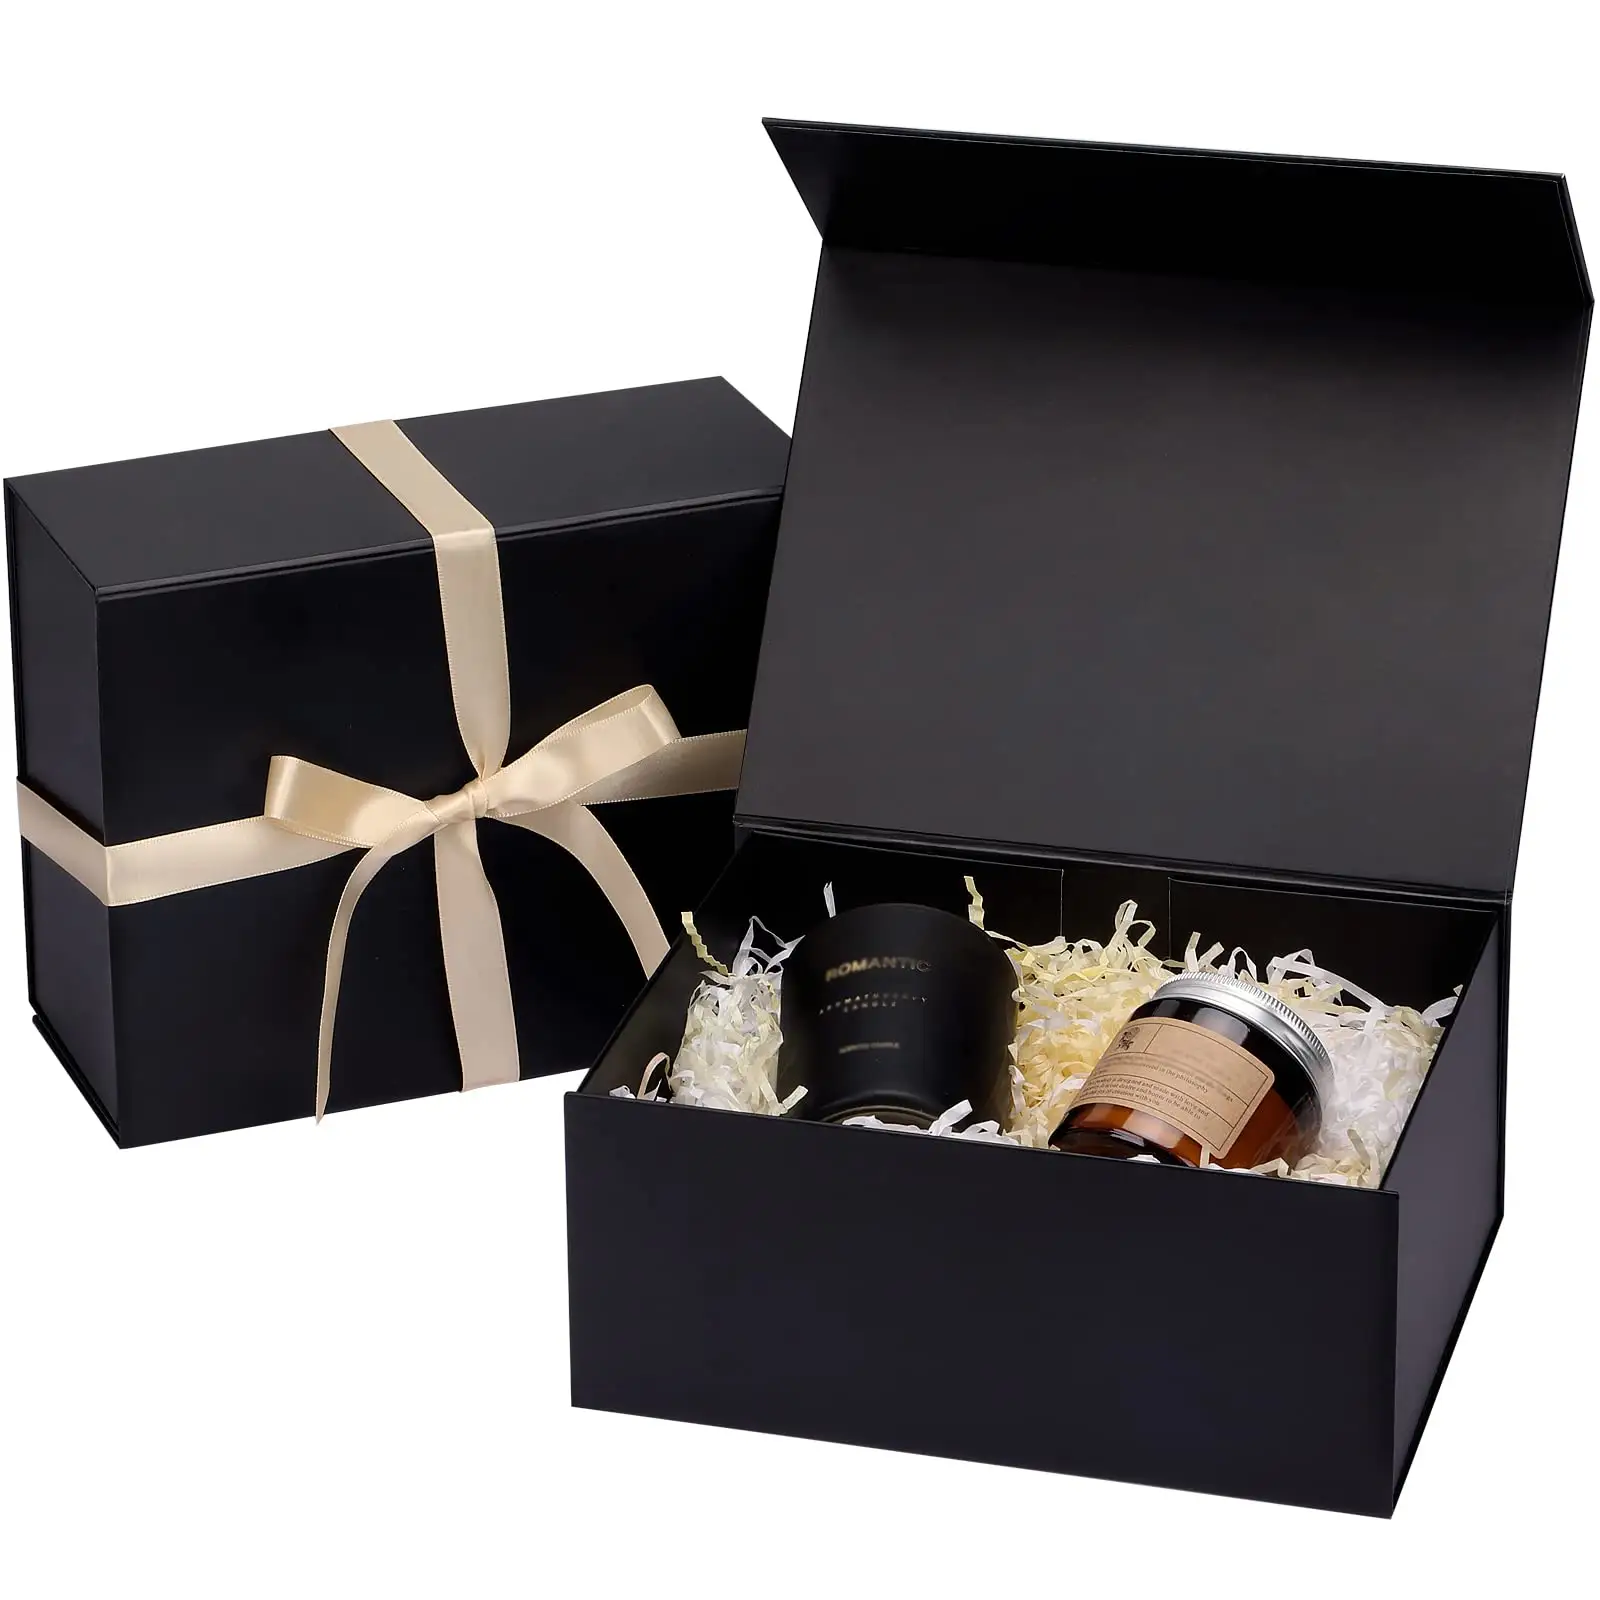 Geschenk box 7.8x7x3.1 Zusammen klappbare Brautjungfer Groom smen Vorschlag Box mit magnetisch faltbaren Geschenk boxen für Hochzeit Weihnachts geschenk